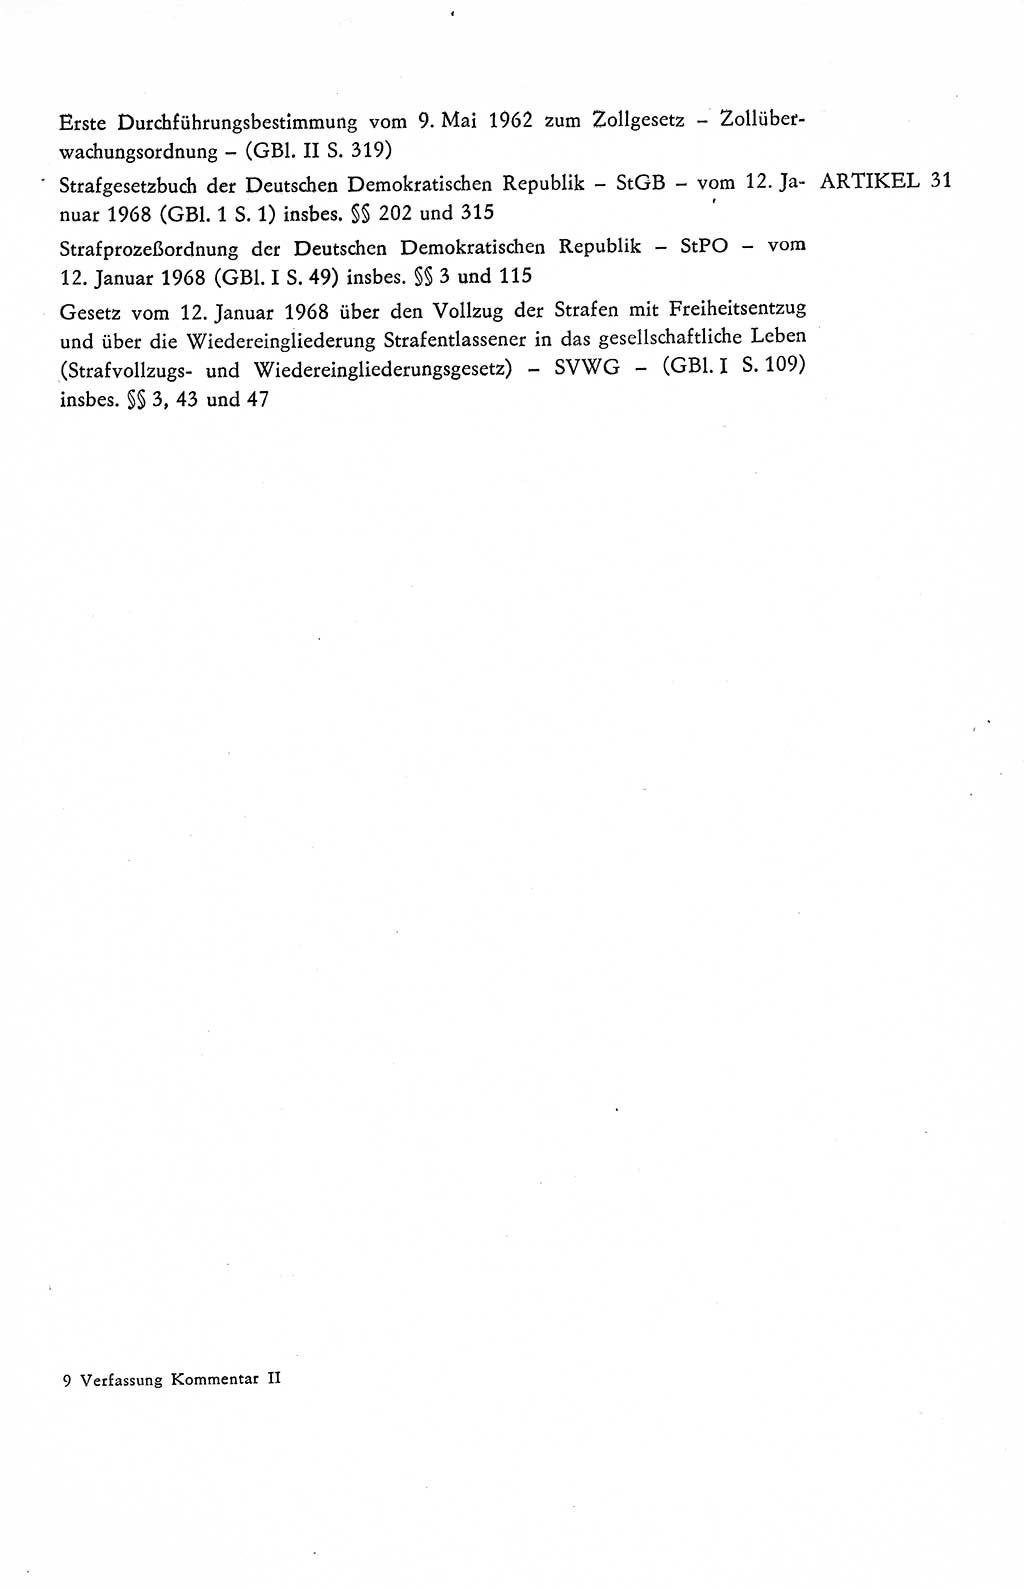 Verfassung der Deutschen Demokratischen Republik (DDR), Dokumente, Kommentar 1969, Band 2, Seite 129 (Verf. DDR Dok. Komm. 1969, Bd. 2, S. 129)